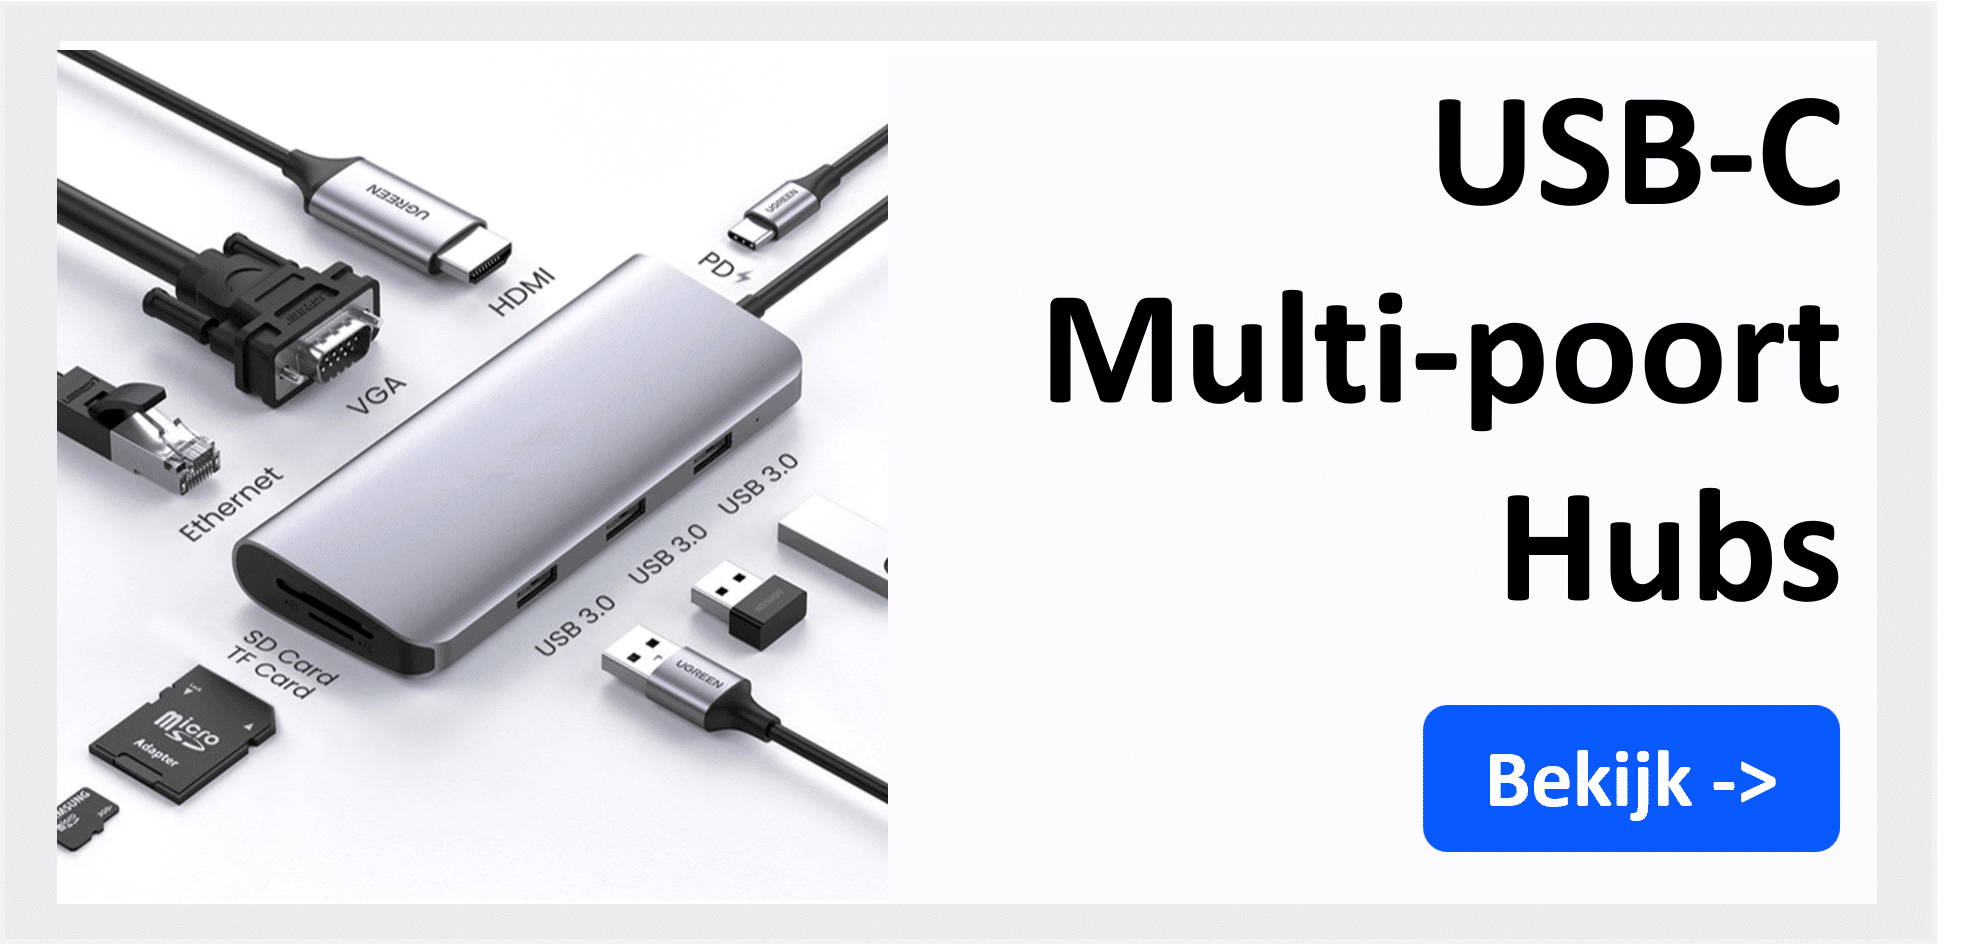 USB-C multipoort hubs